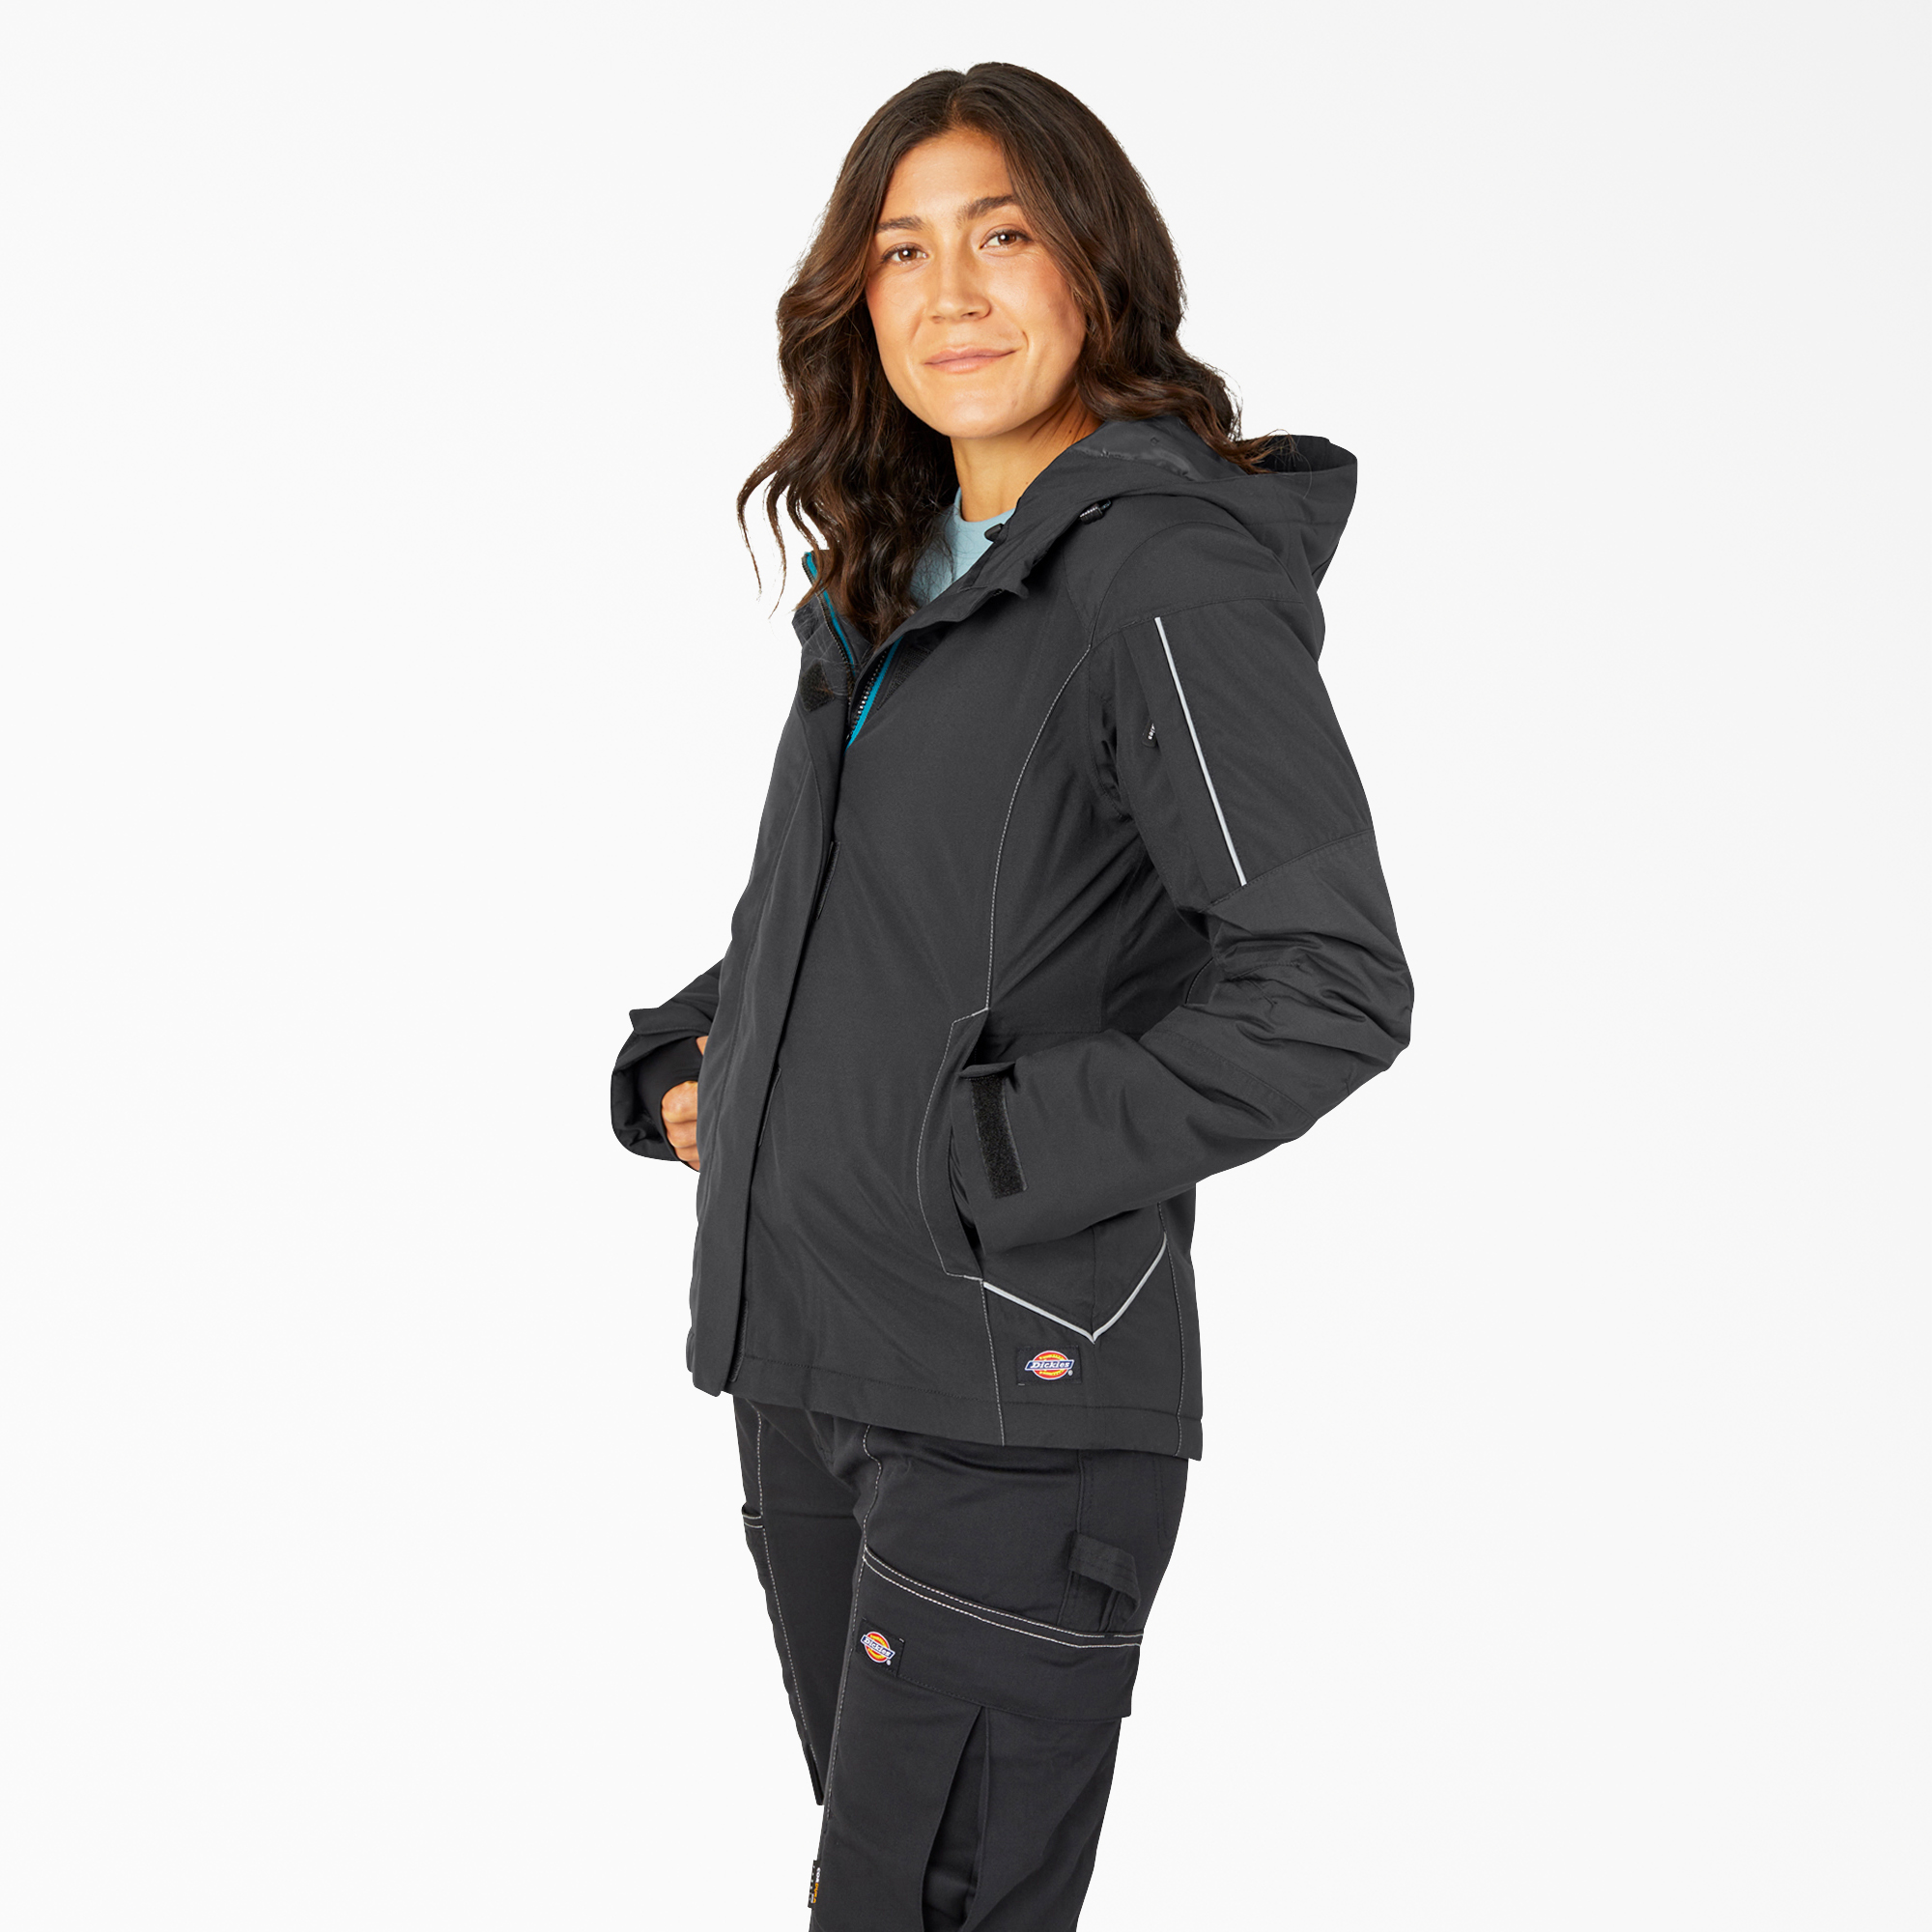 Women's Performance Workwear Insulated Waterproof Jacket - Black (BK)